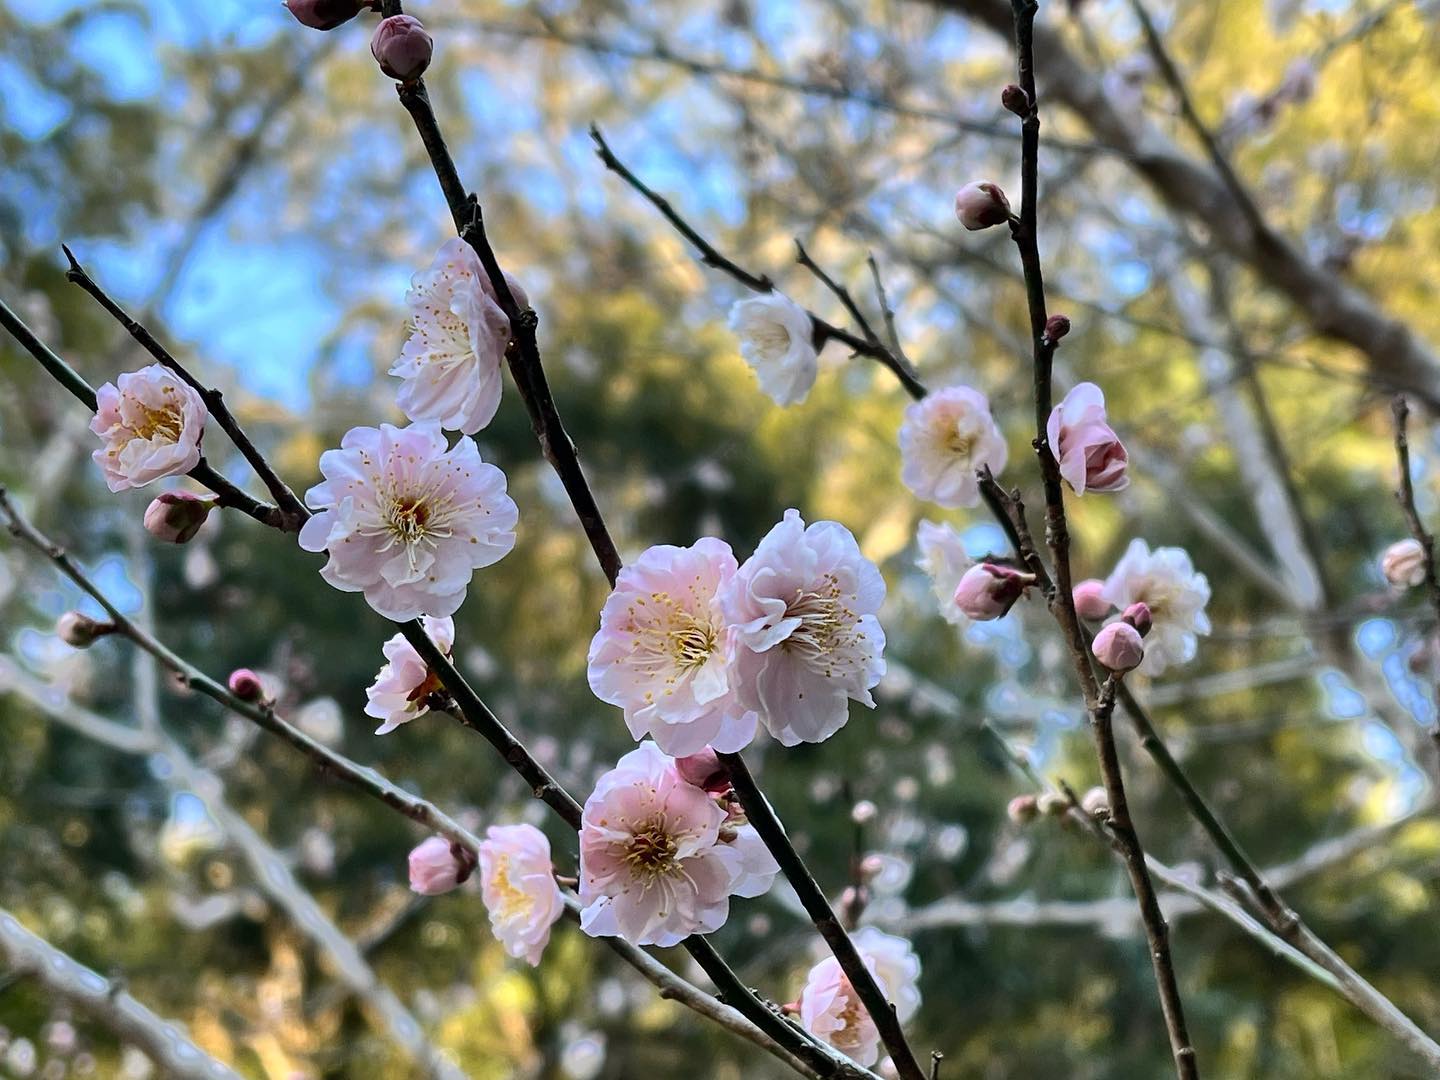 梅がきれいに咲きはじめました〜カワイイですね〜️#梅 #花 #flowers #flower #sakura #spring #春 #自然 #里山 #竹林 #日本 #japan #自然好きな人と繋がりたい #阿波たけのこ農園